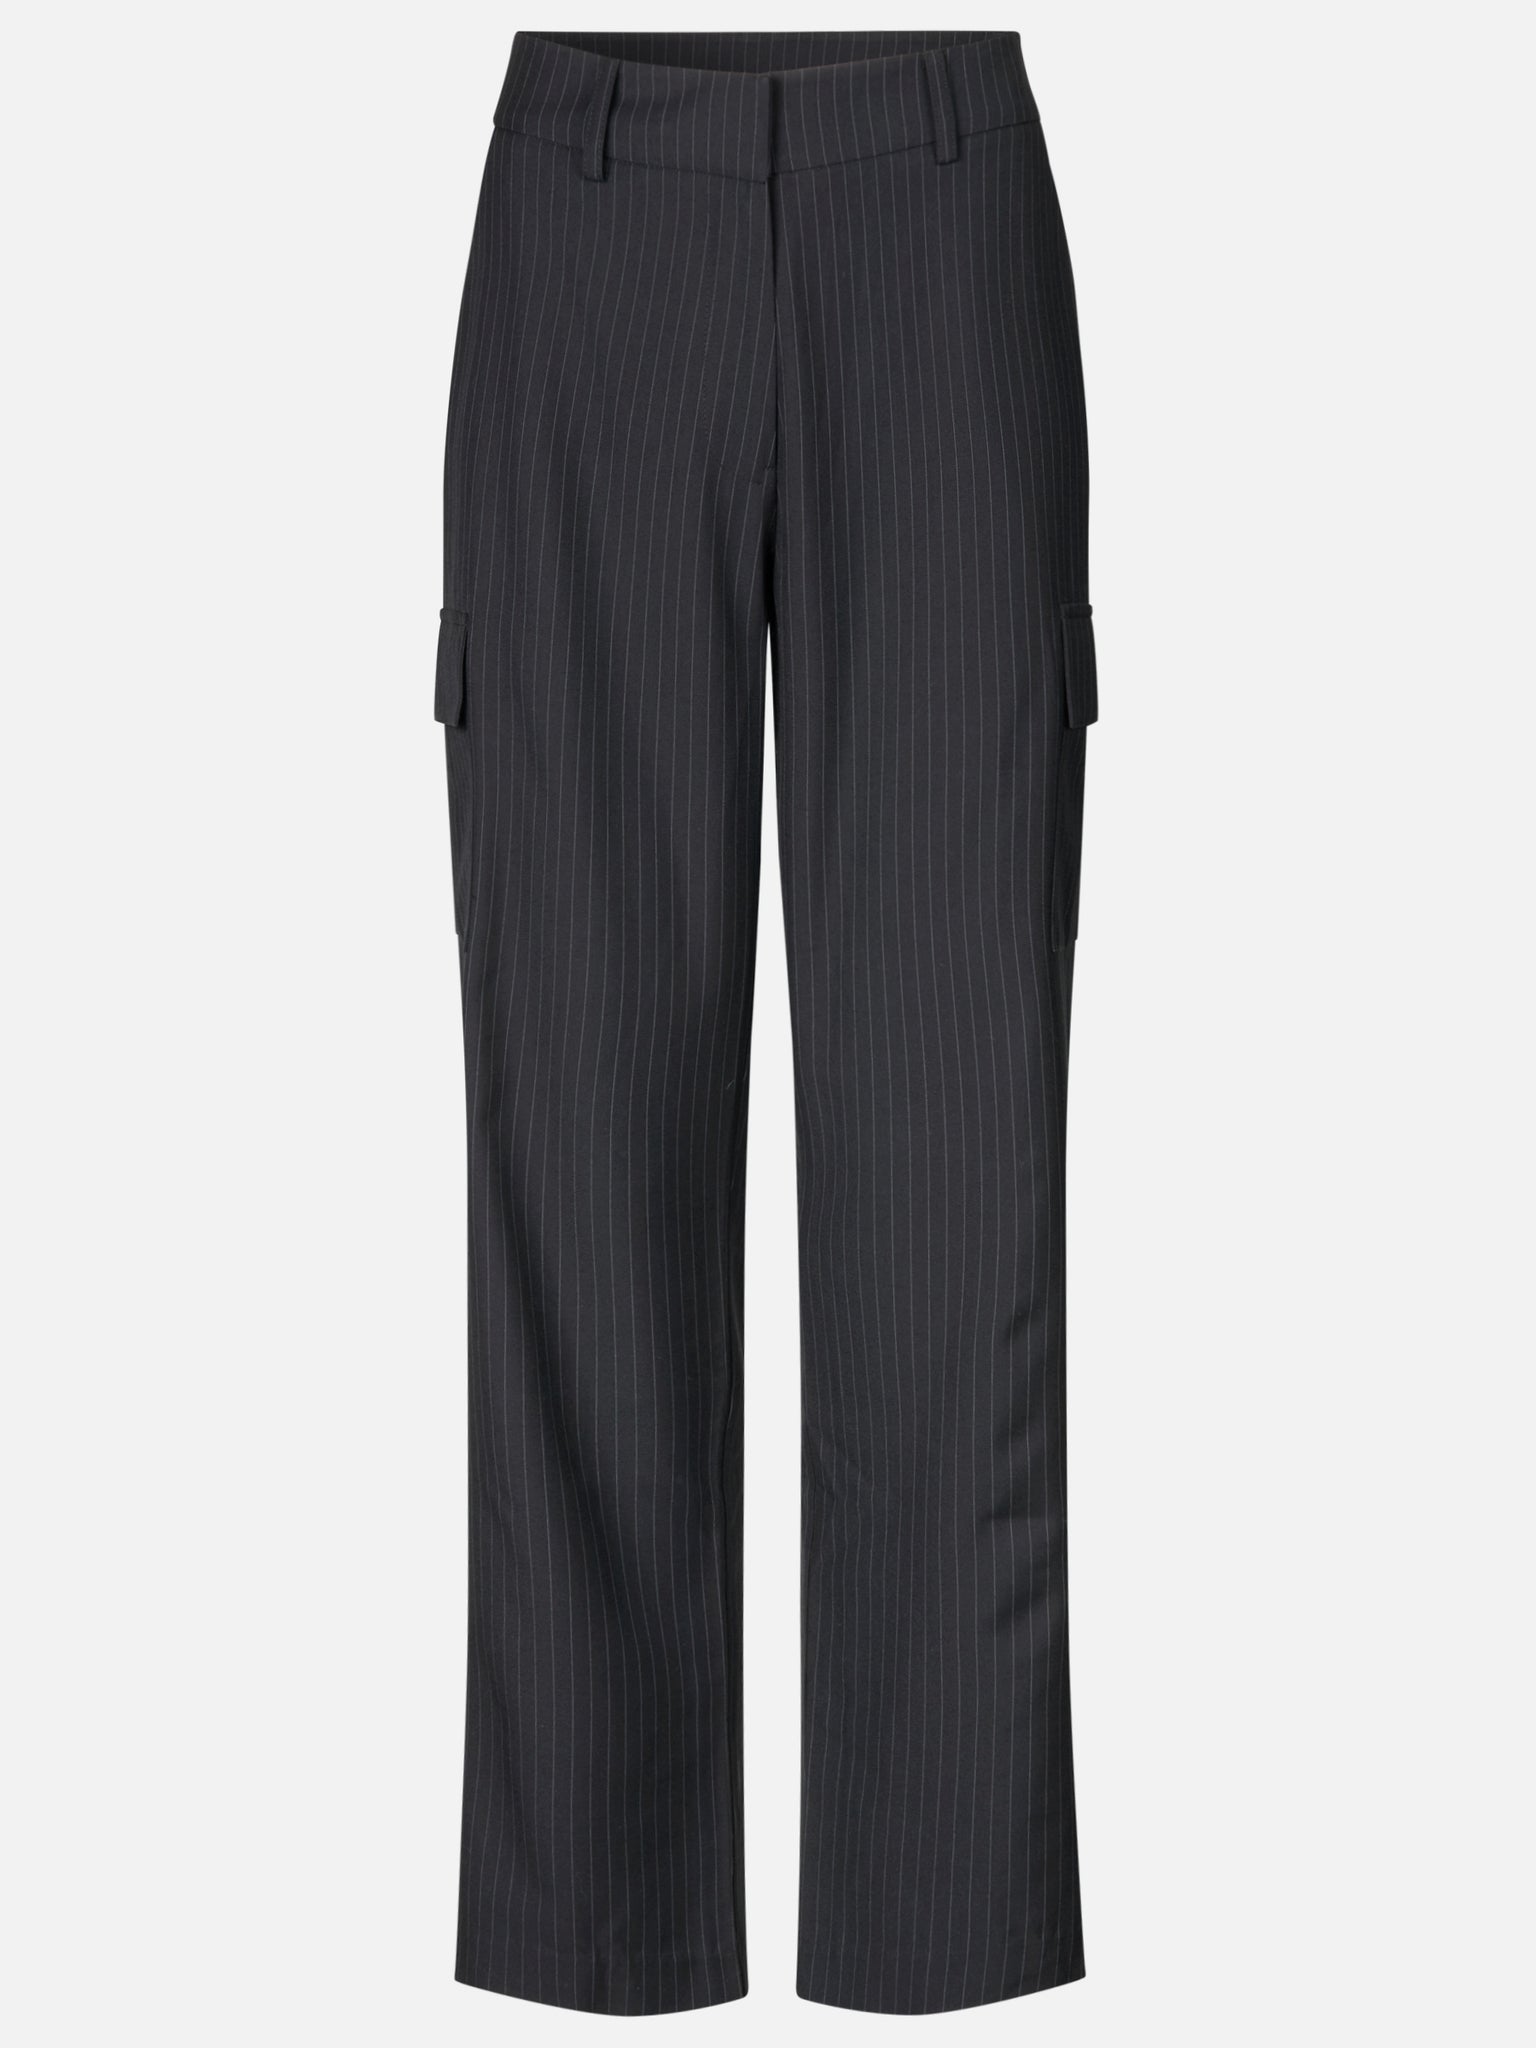 Classic suit pants